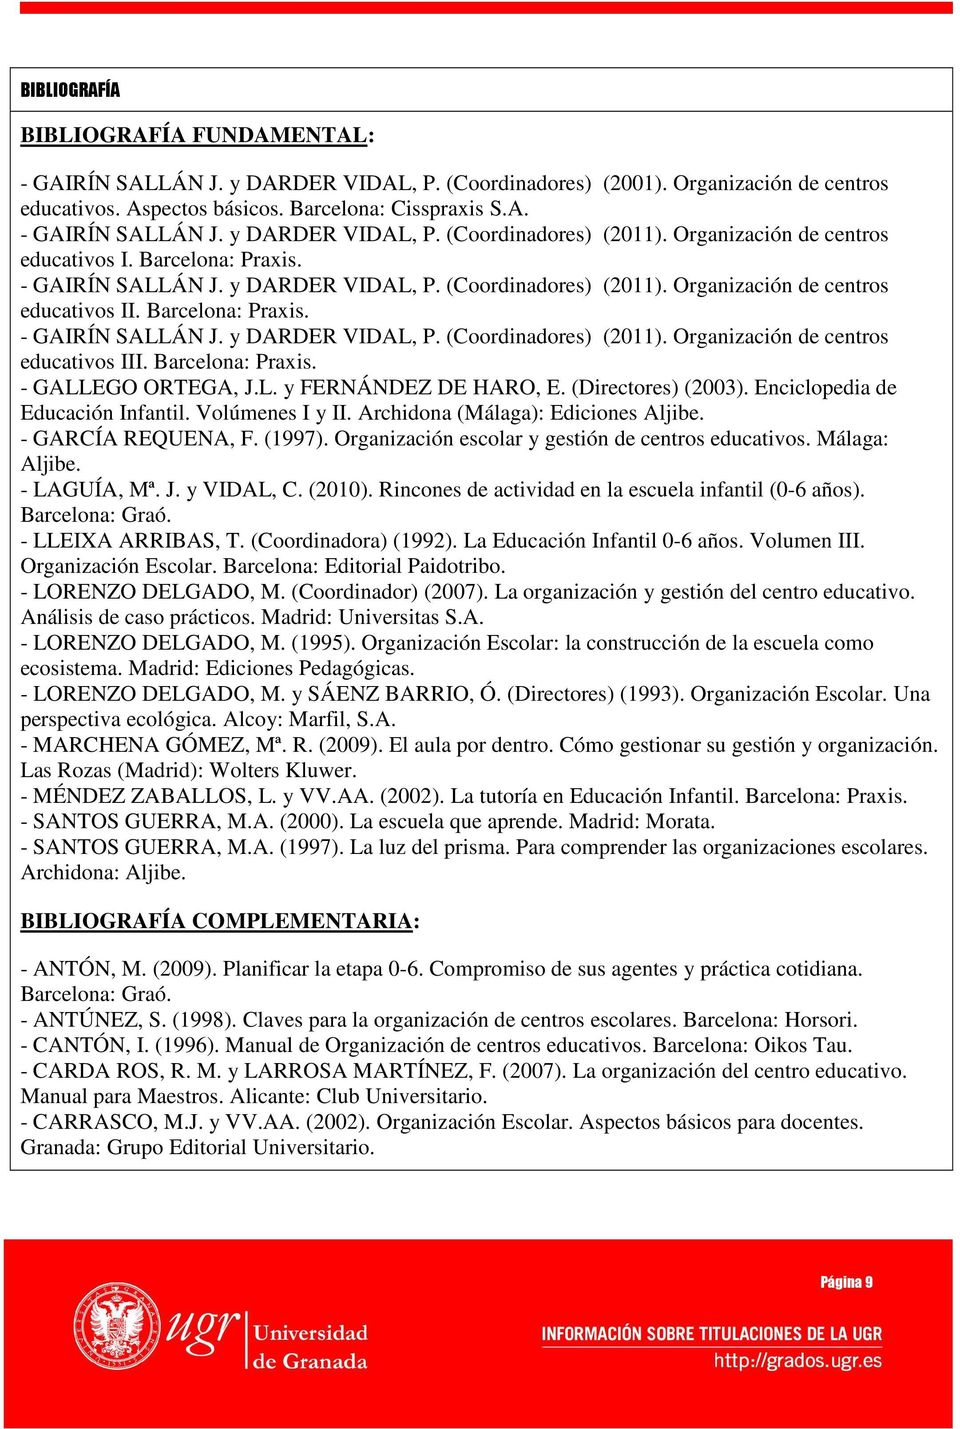 Barcelona: Praxis. - GALLEGO ORTEGA, J.L. y FERNÁNDEZ DE HARO, E. (Directores) (2003). Enciclopedia de Educación Infantil. Volúmenes I y II. Archidona (Málaga): Ediciones Aljibe. - GARCÍA REQUENA, F.